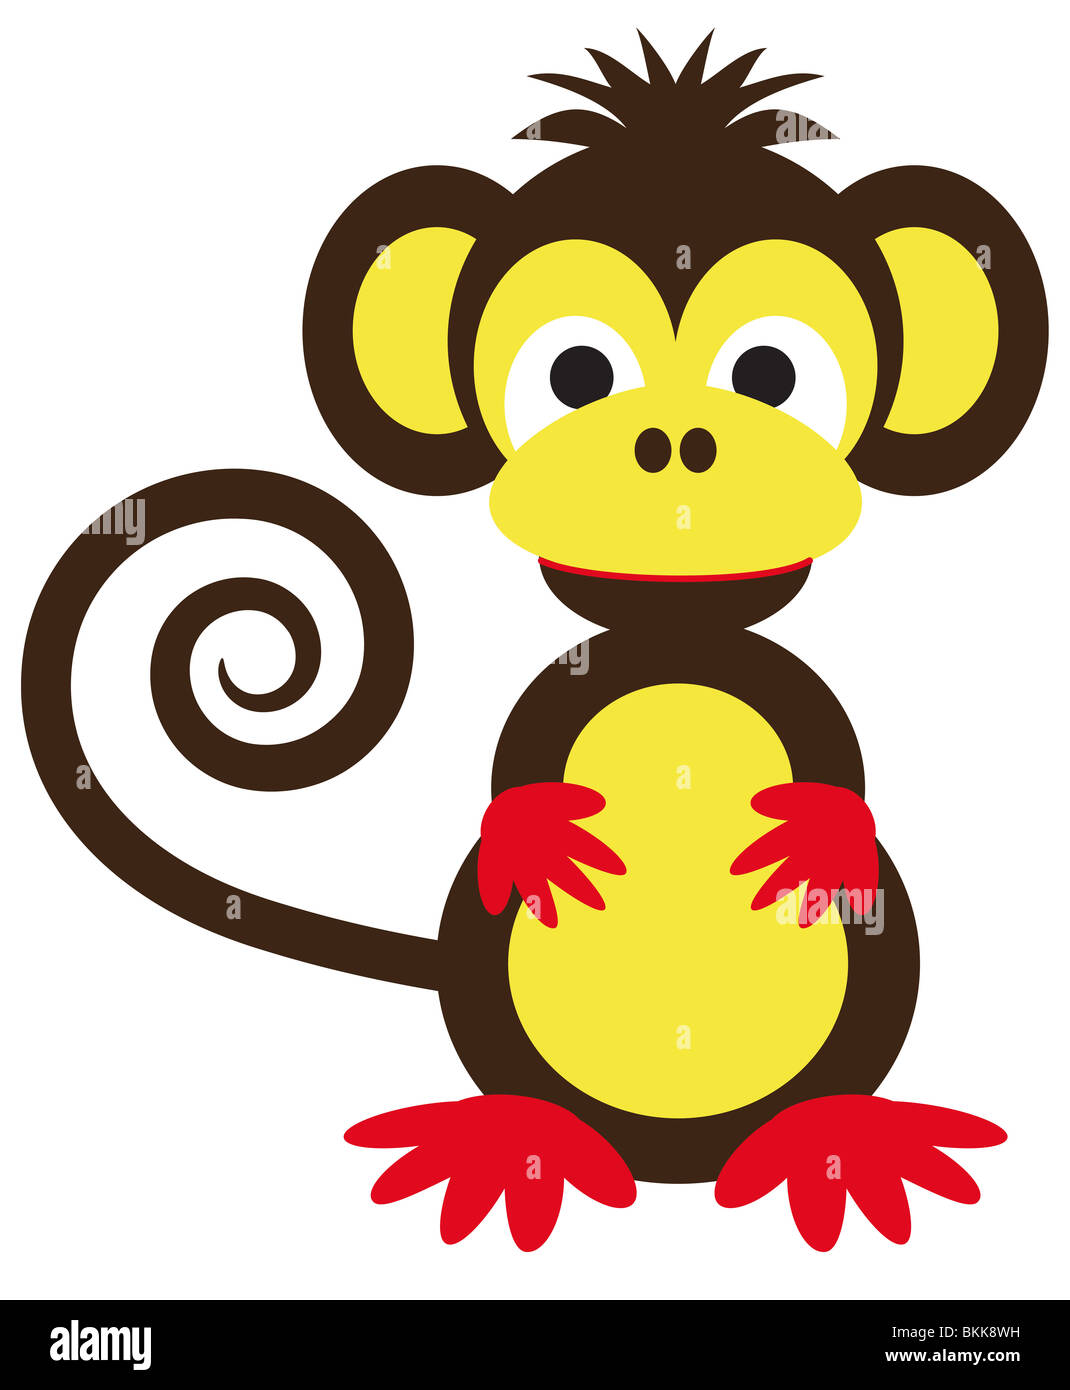 Funny monkey en marron et jaune avec curly tail Banque D'Images